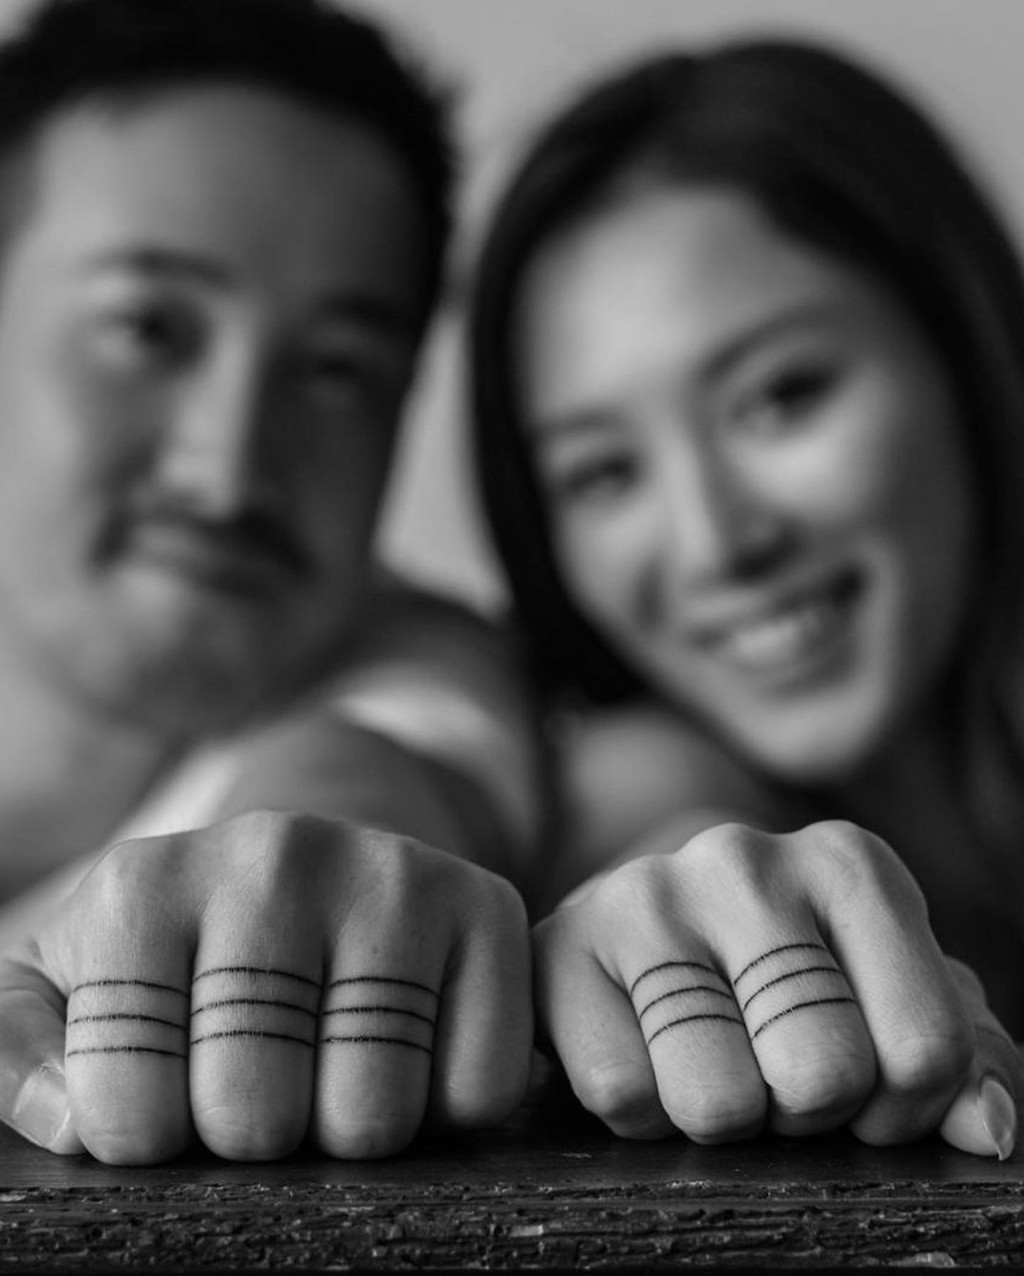 两人使用「戒指纹身」代替「正常」戒指，曾国祥在3只手指纹上共9个圈，王敏奕则在两只手指纹上共6圈，代表两人的结婚日期9月6日。